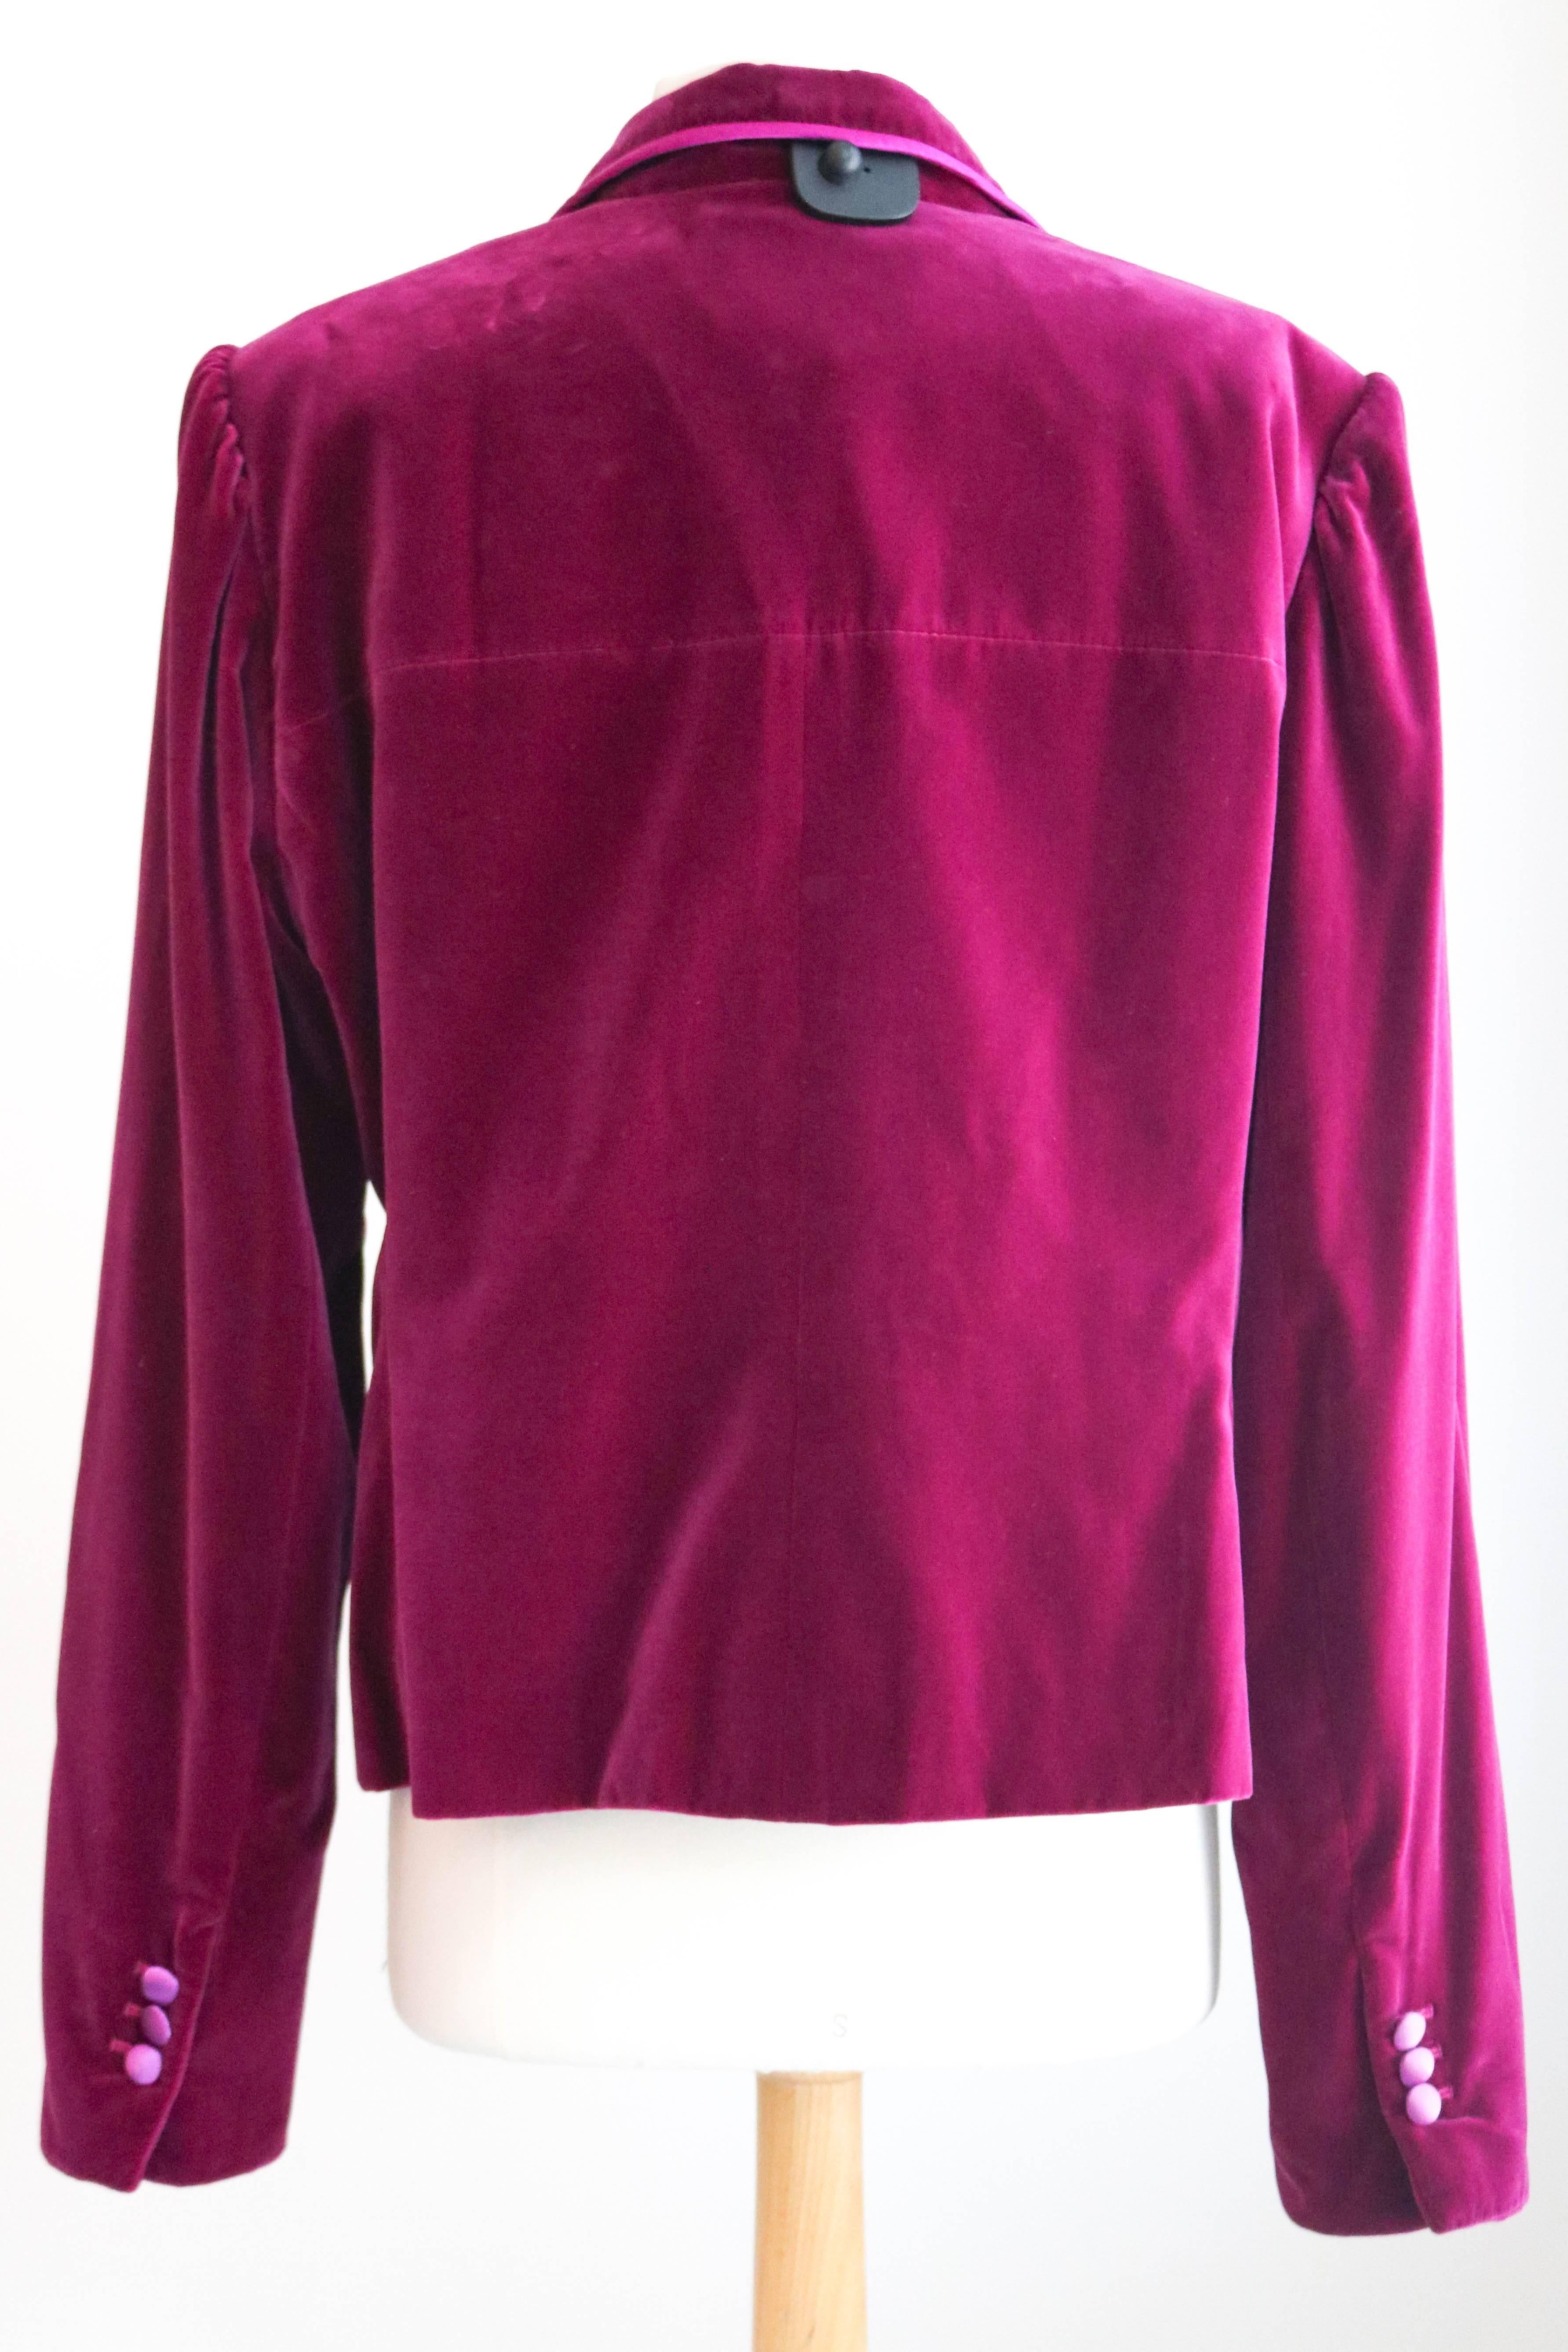 Yves Saint Laurent Rive Gauche Velvet Evening Jacket 48 For Sale 4